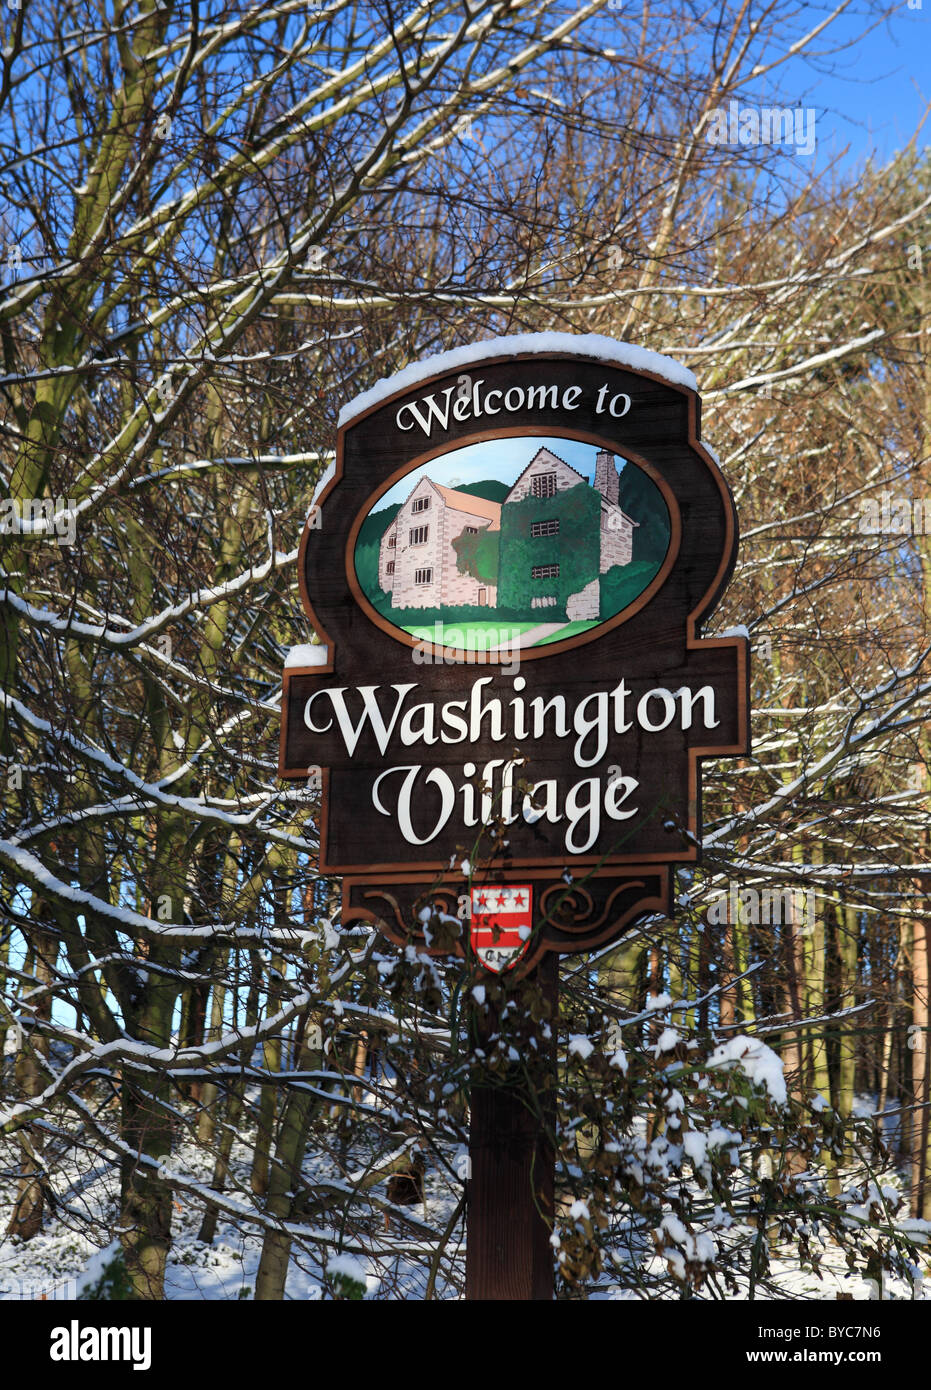 Washington Village sign, Sunderland, North East England, UK Stock Photo